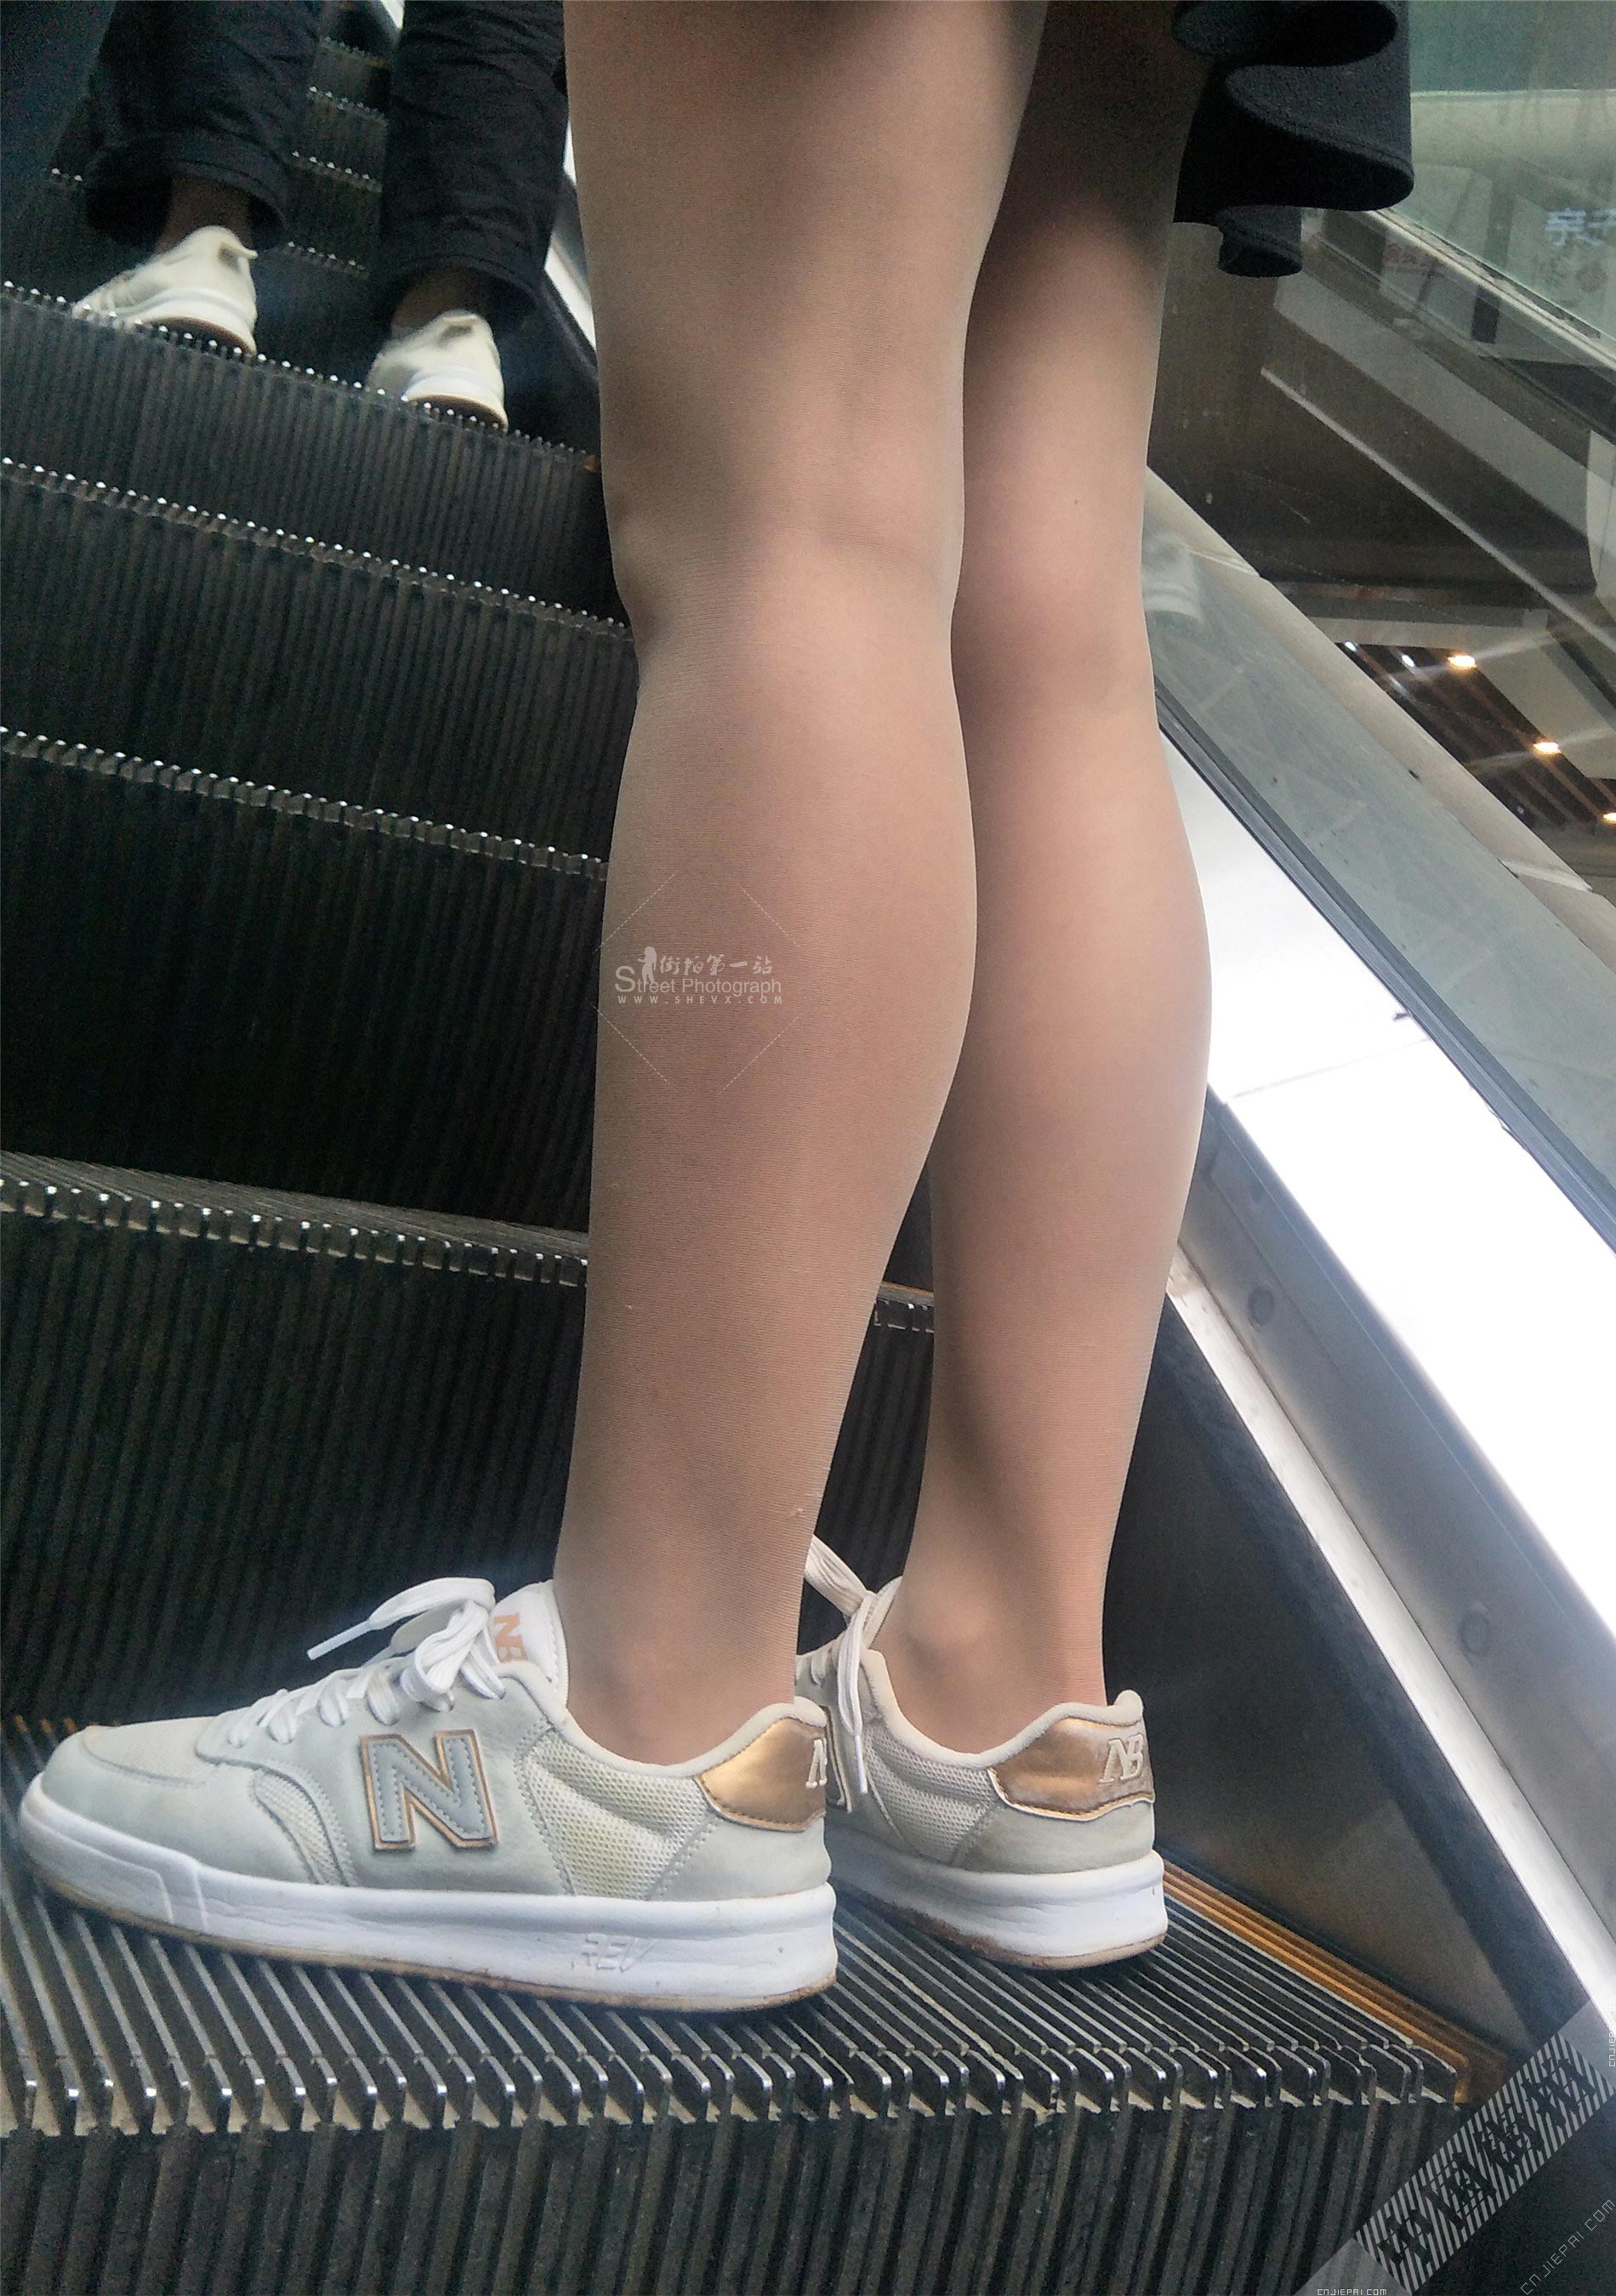 上楼梯的厚丝袜超短裙美女，性感双腿高清特写 图8